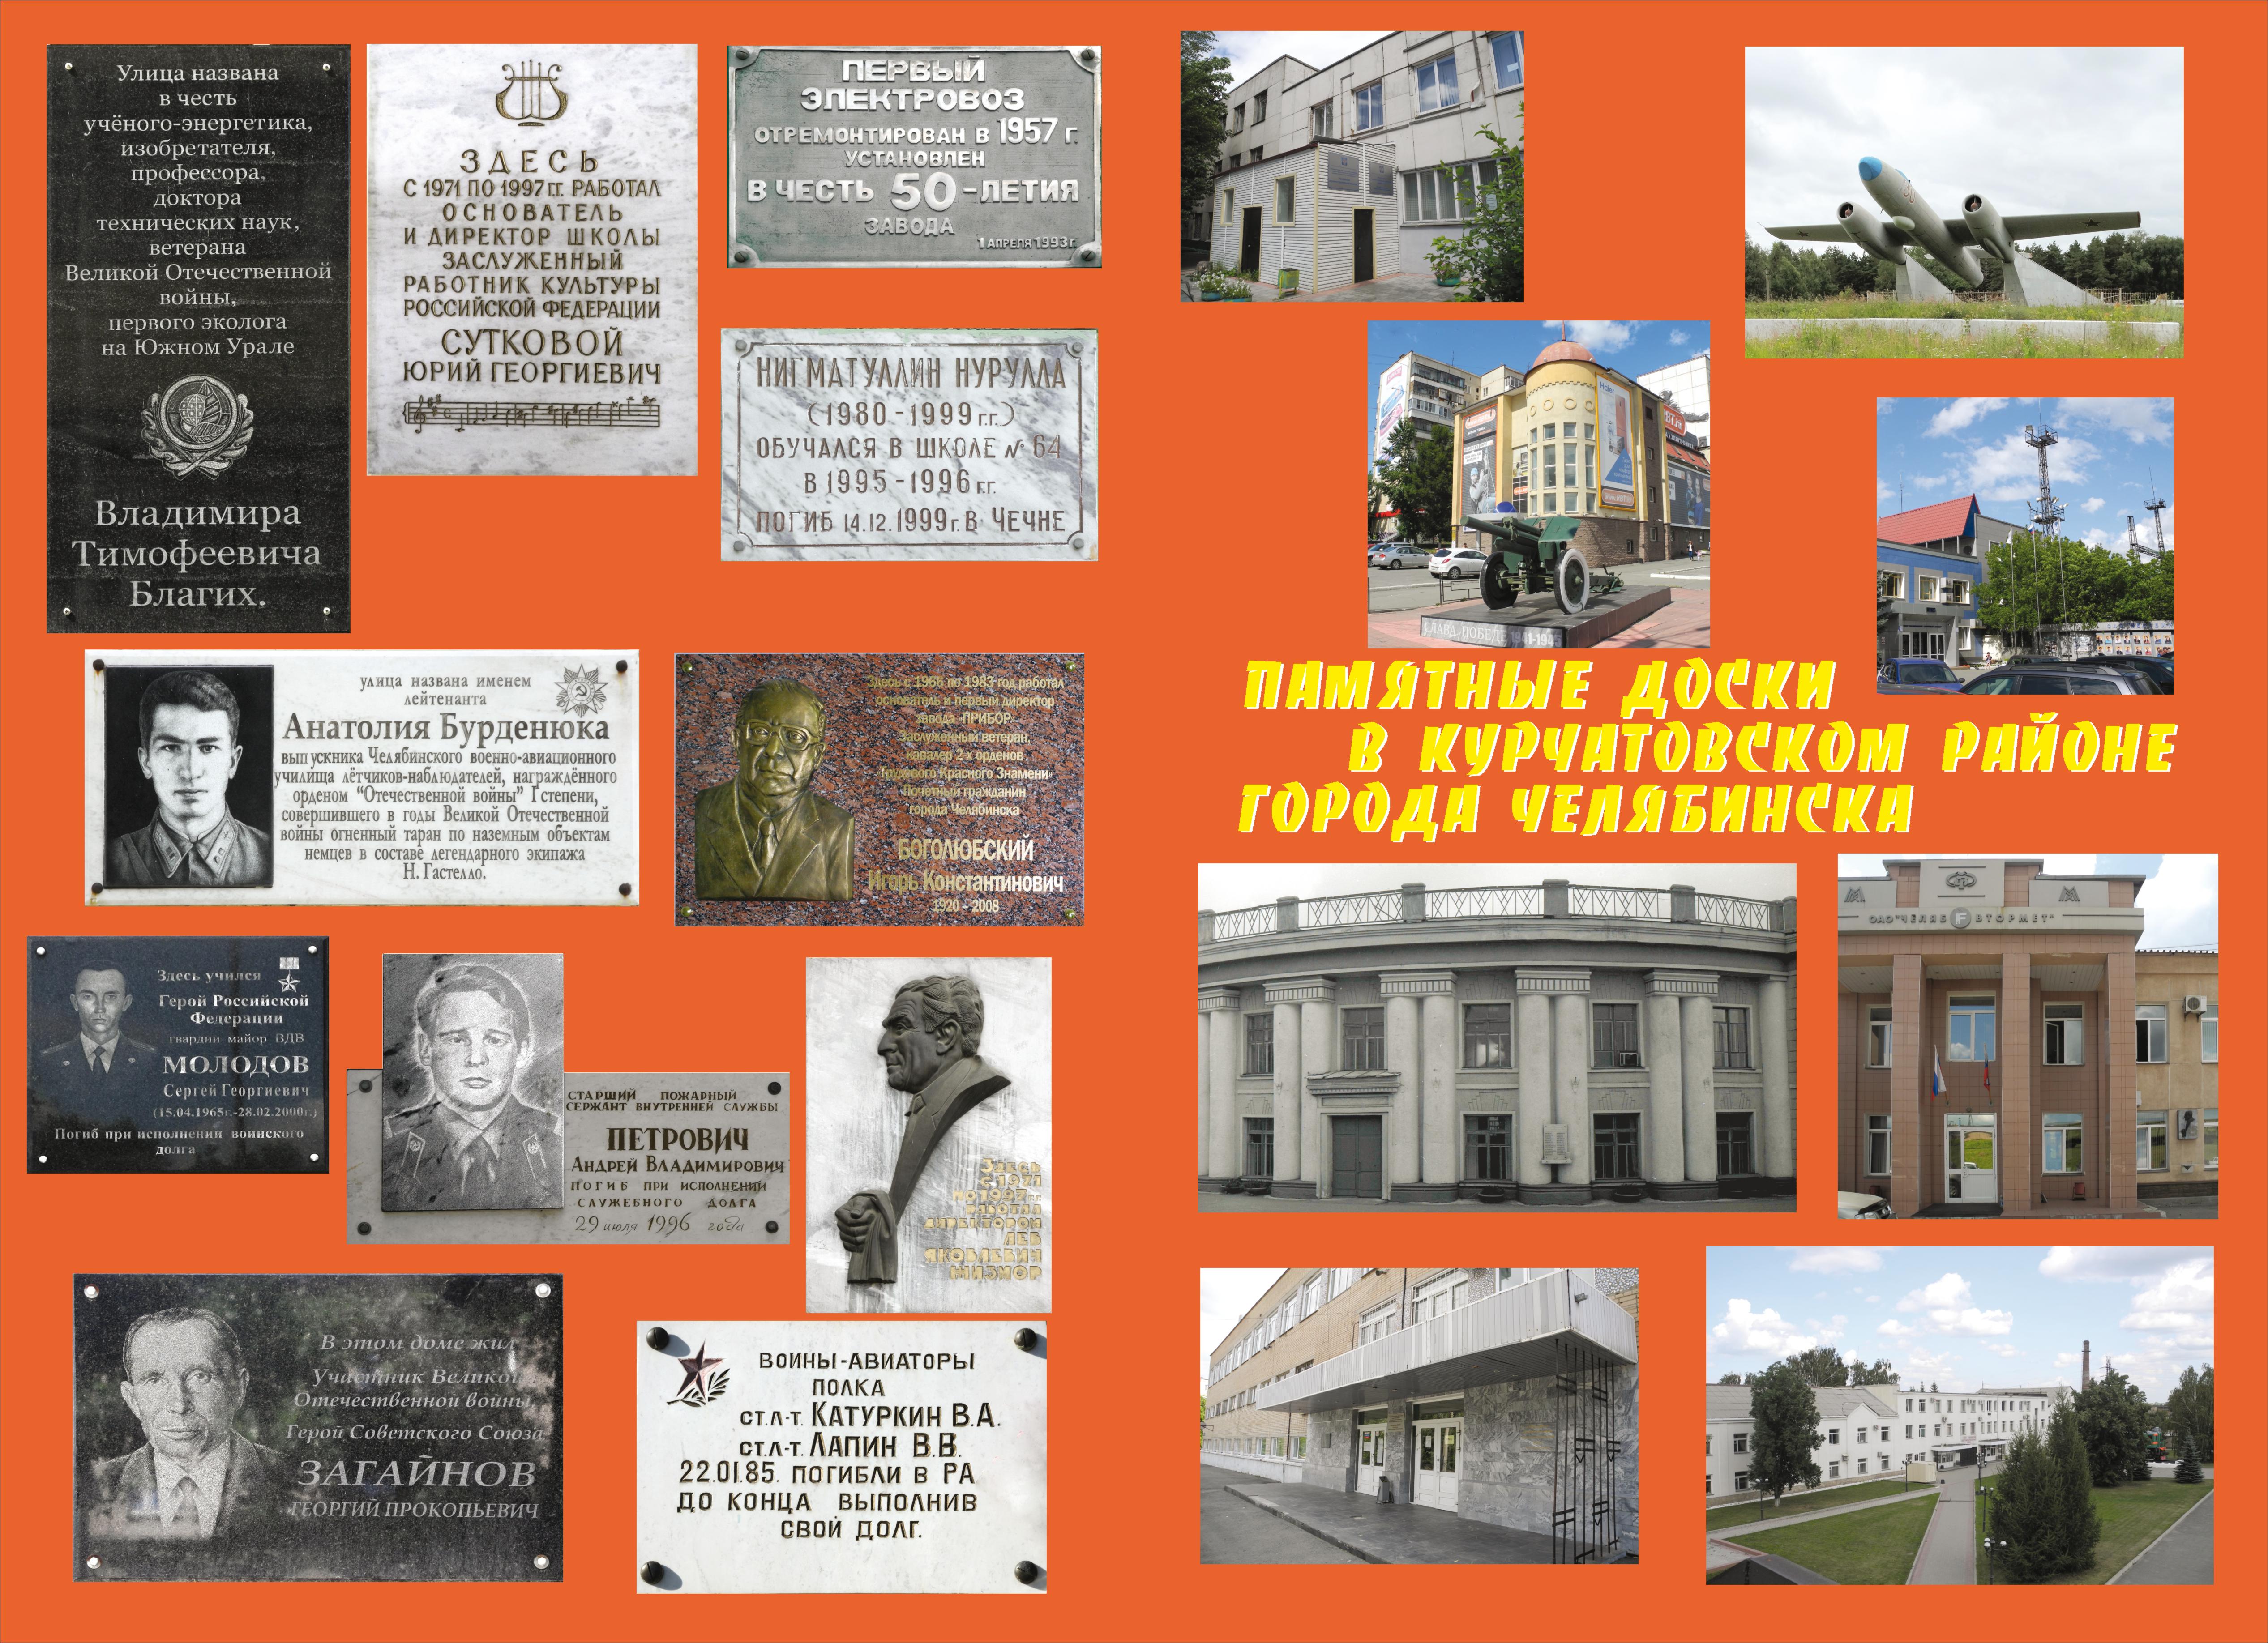 Памятные доски города Челябинска